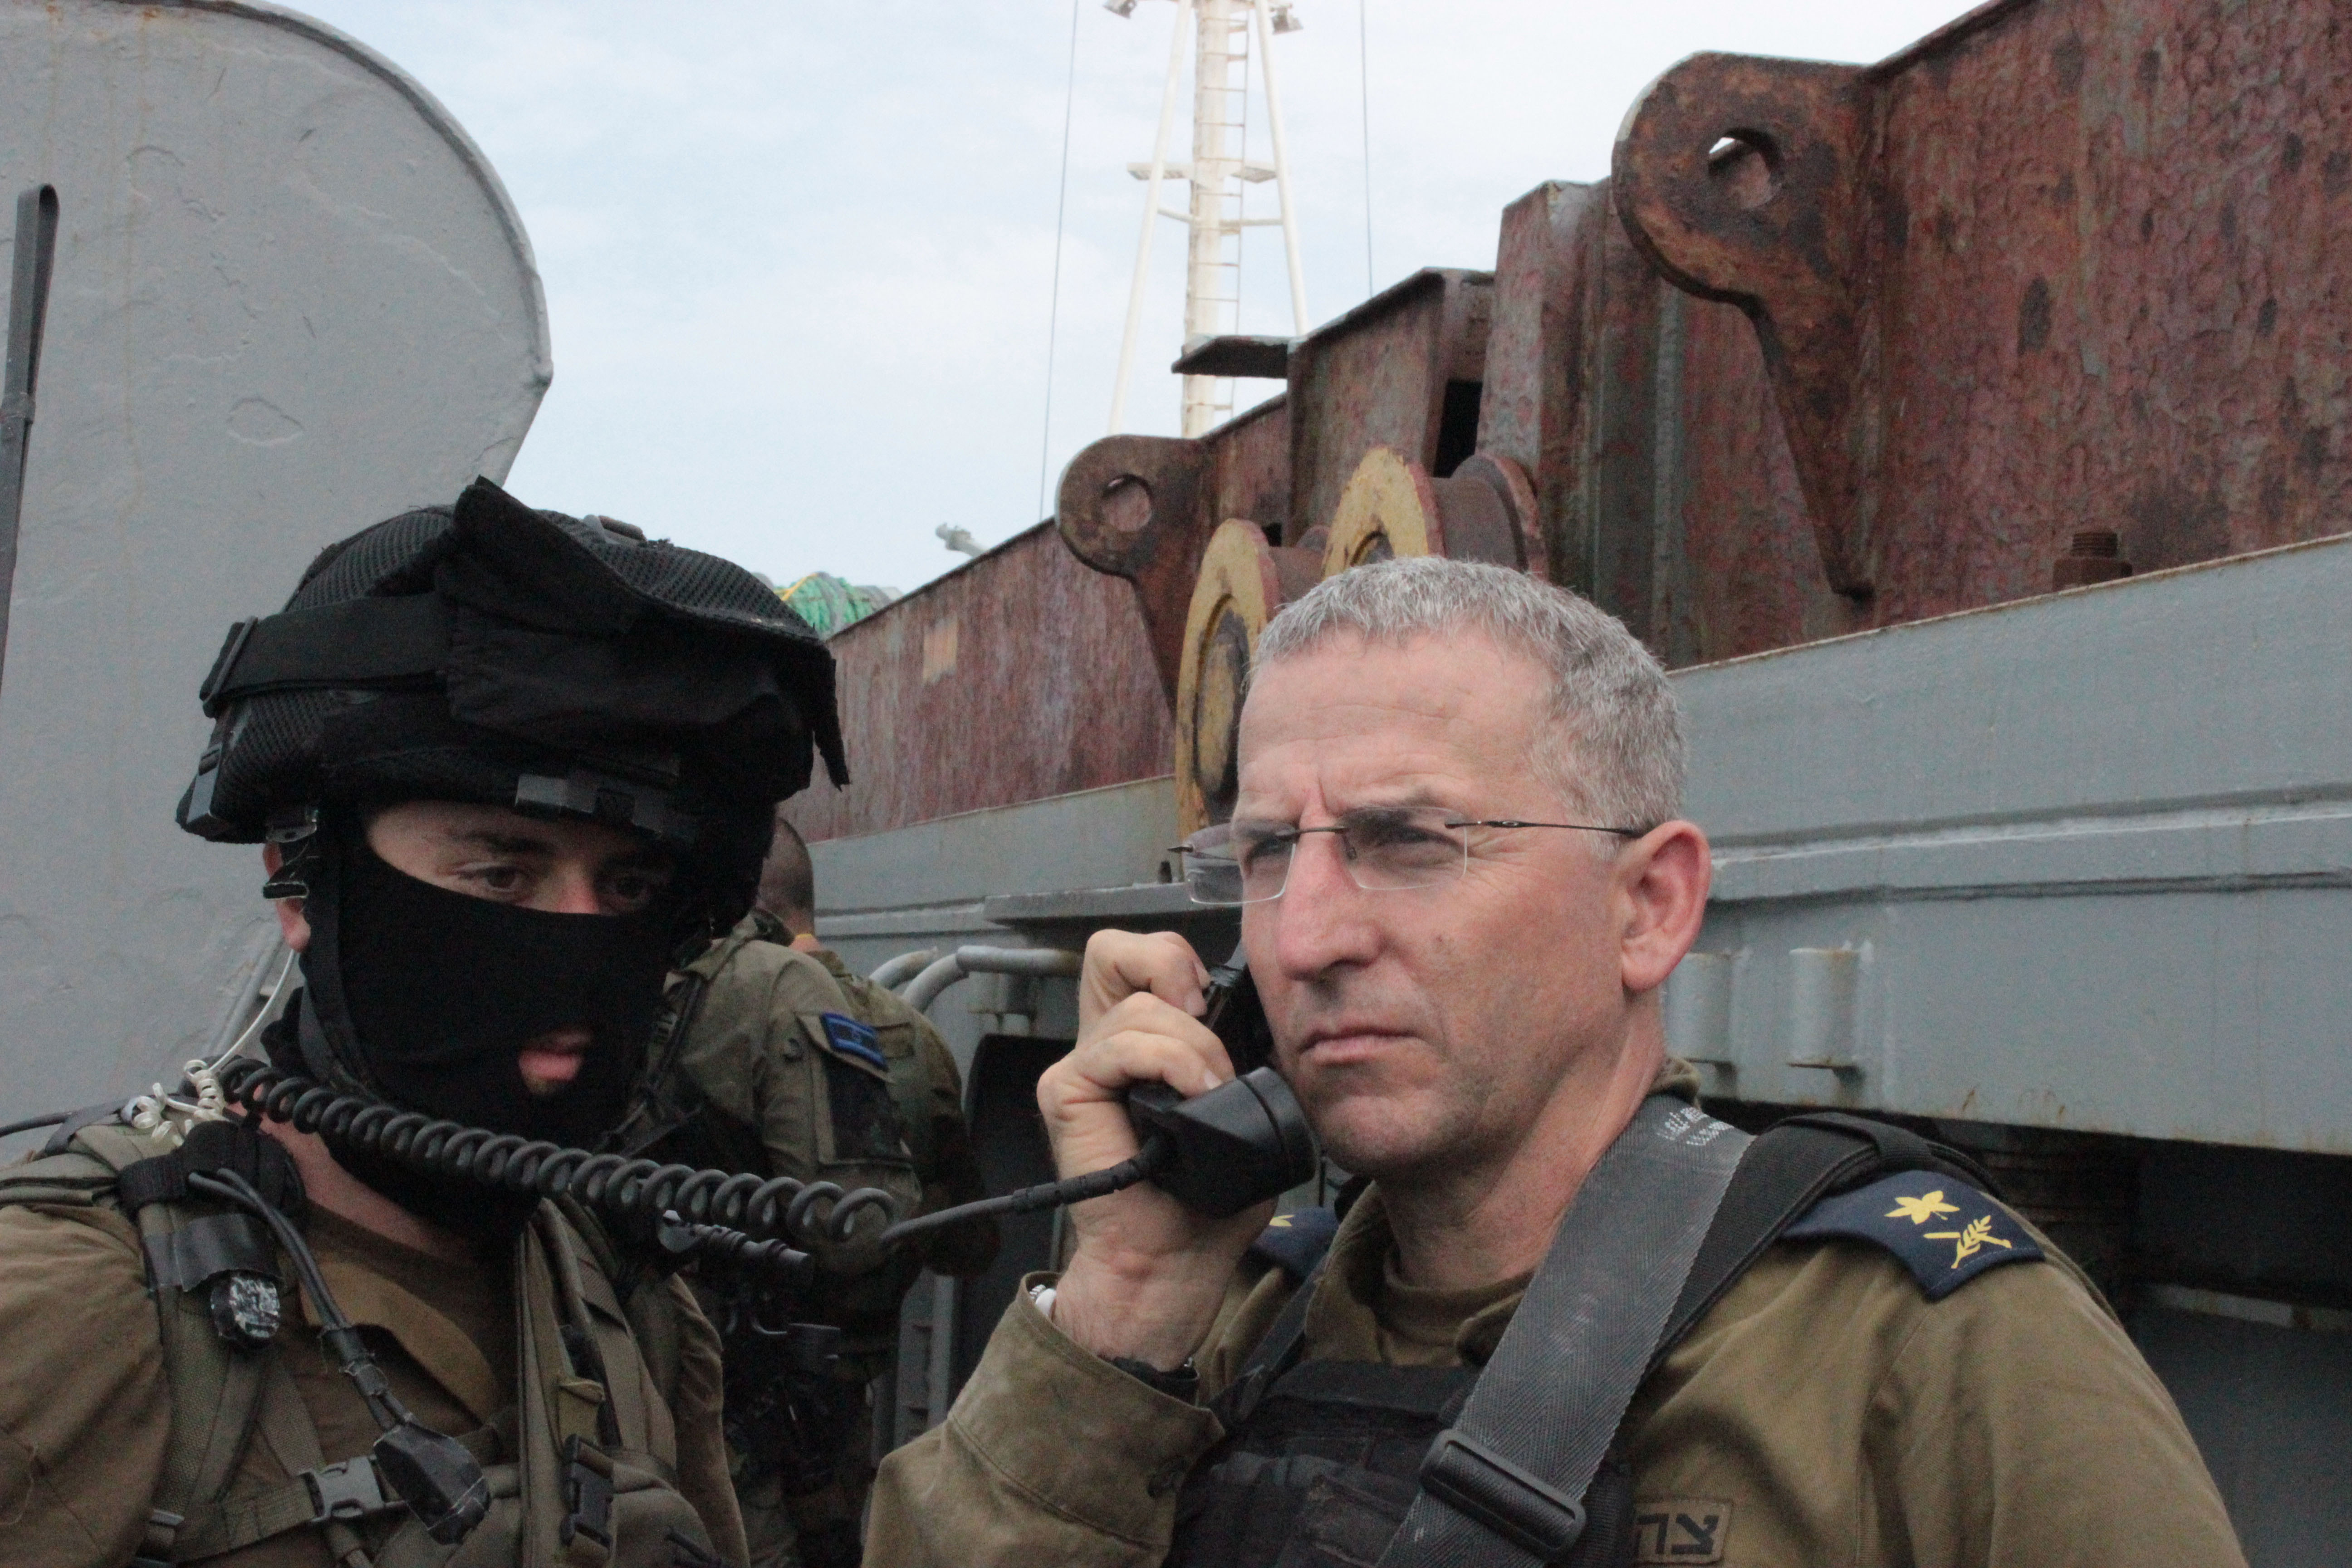 حوار مع نائب الأدميرال رام روطبرغ ، قائد البحرية الإسرائيلية Rothberg2